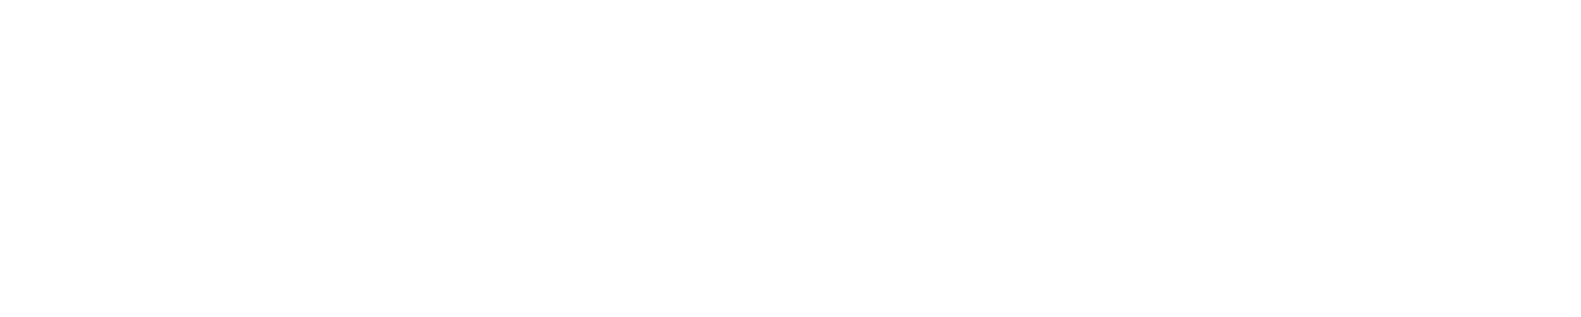 Givaudan logo grand pour les fonds sombres (PNG transparent)